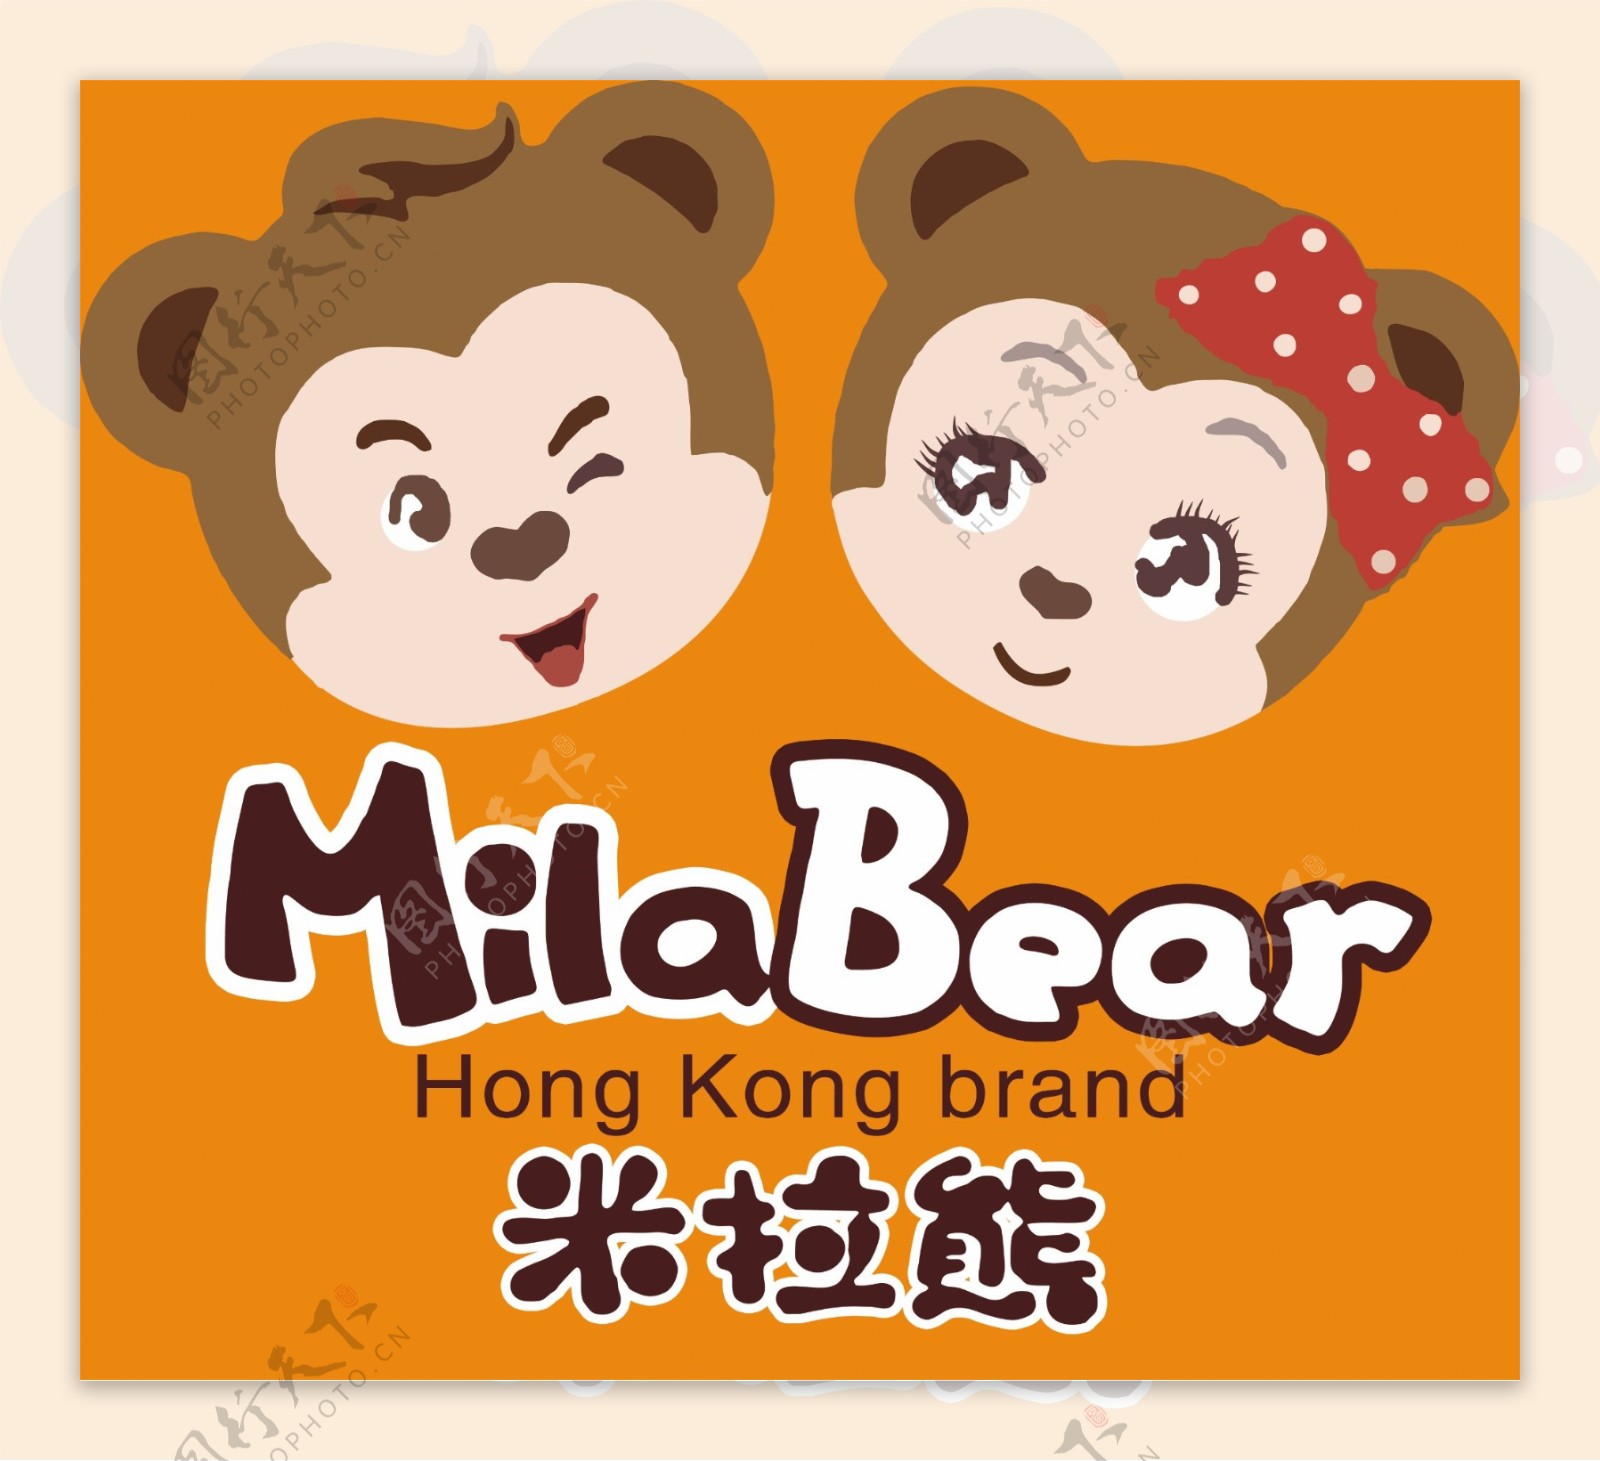 米拉熊logo图片